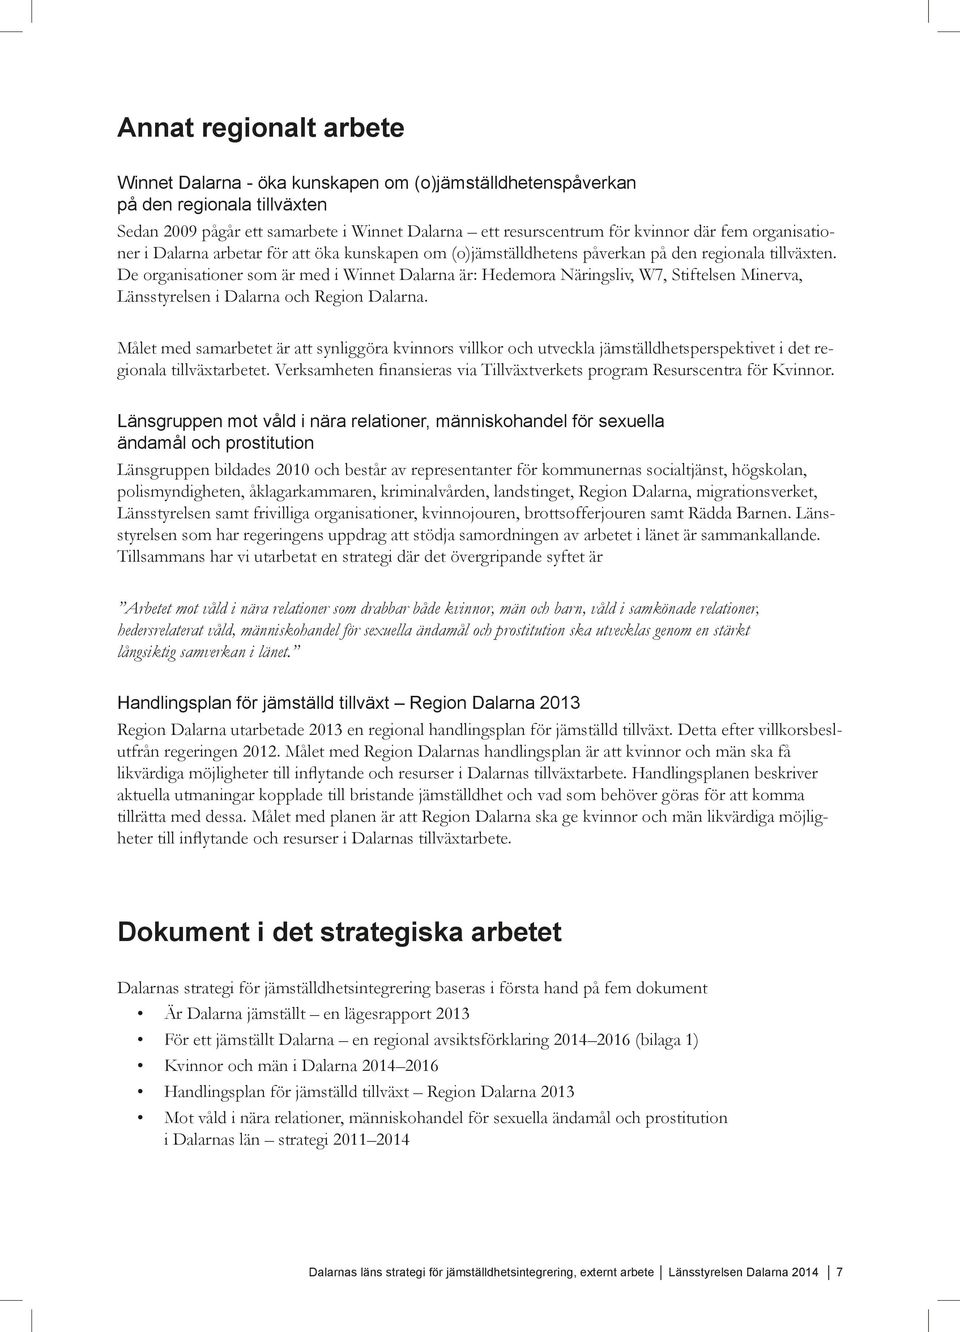 De organisationer som är med i Winnet Dalarna är: Hedemora Näringsliv, W7, Stiftelsen Minerva, Länsstyrelsen i Dalarna och Region Dalarna.